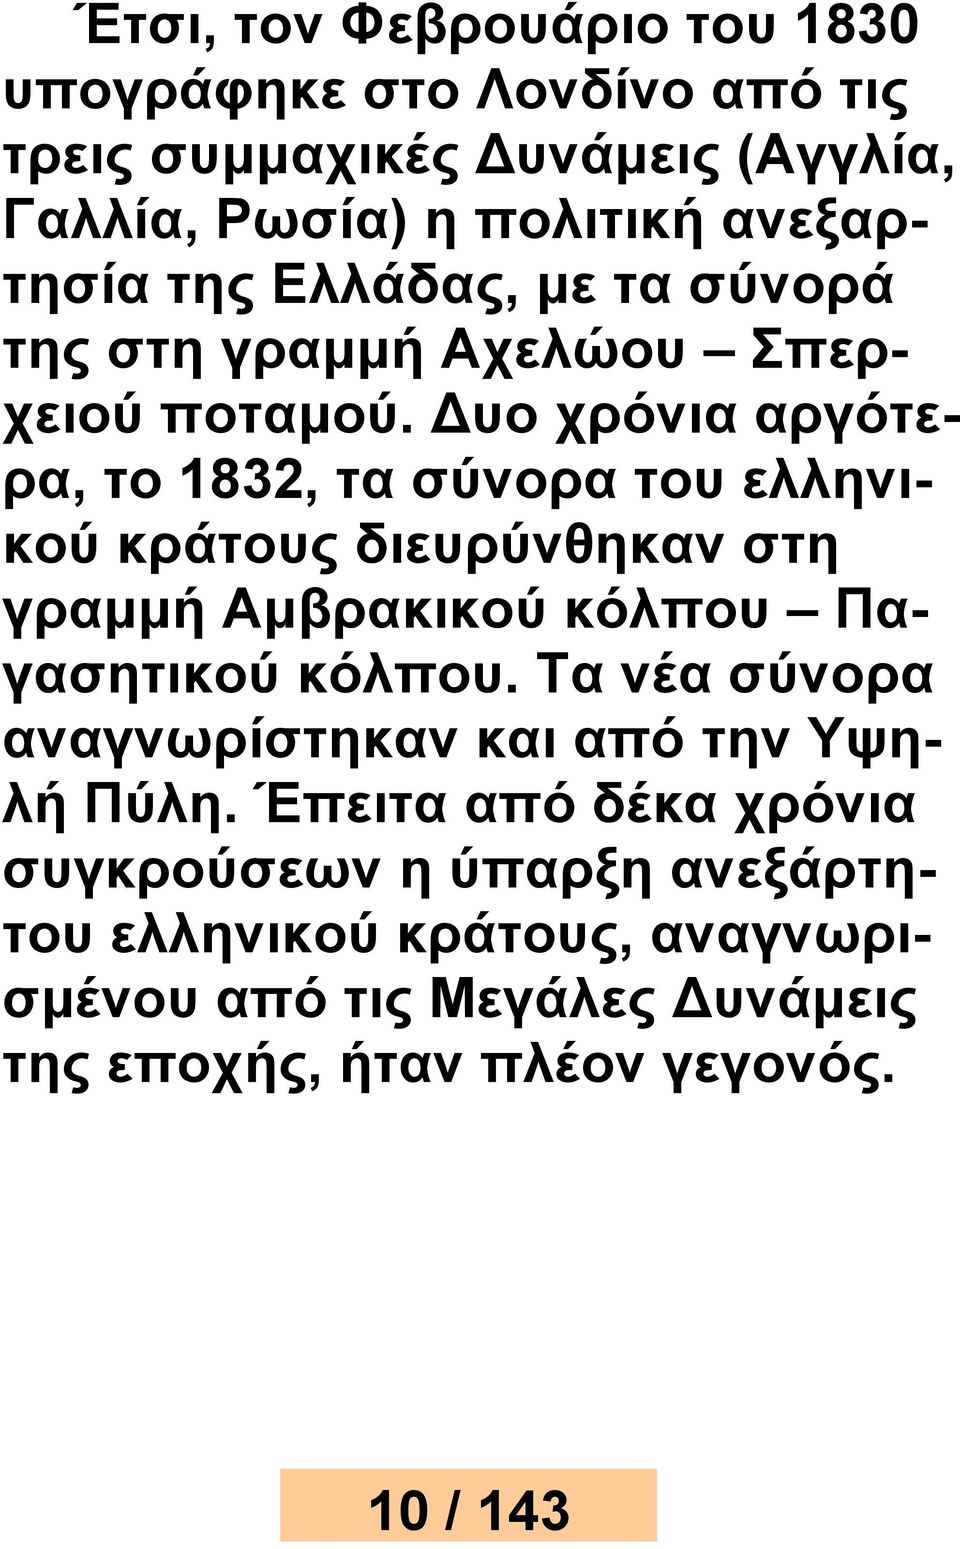 Δυο χρόνια αργότερα, το 1832, τα σύνορα του ελληνικού κράτους διευρύνθηκαν στη γραμμή Αμβρακικού κόλπου Παγασητικού κόλπου.